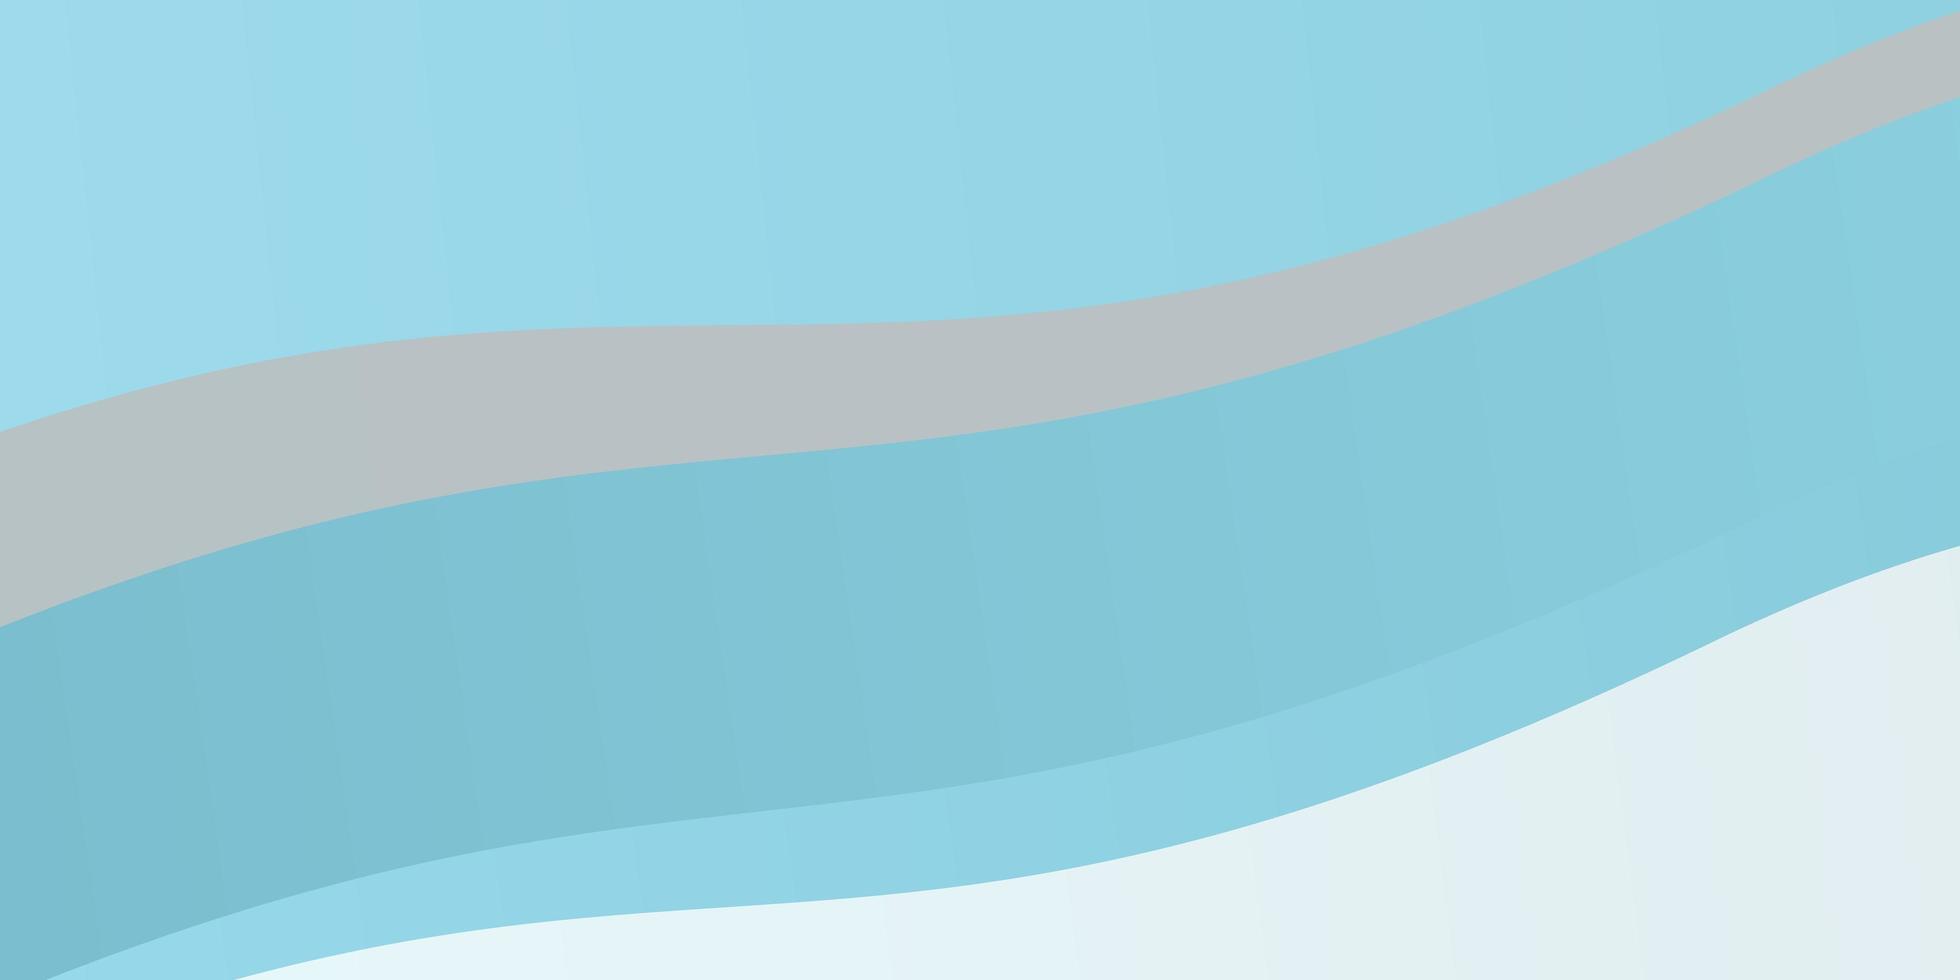 texture vecteur bleu clair avec illustration colorée d'arc circulaire dans un style abstrait avec motif de lignes pliées pour les dépliants de livrets d'affaires